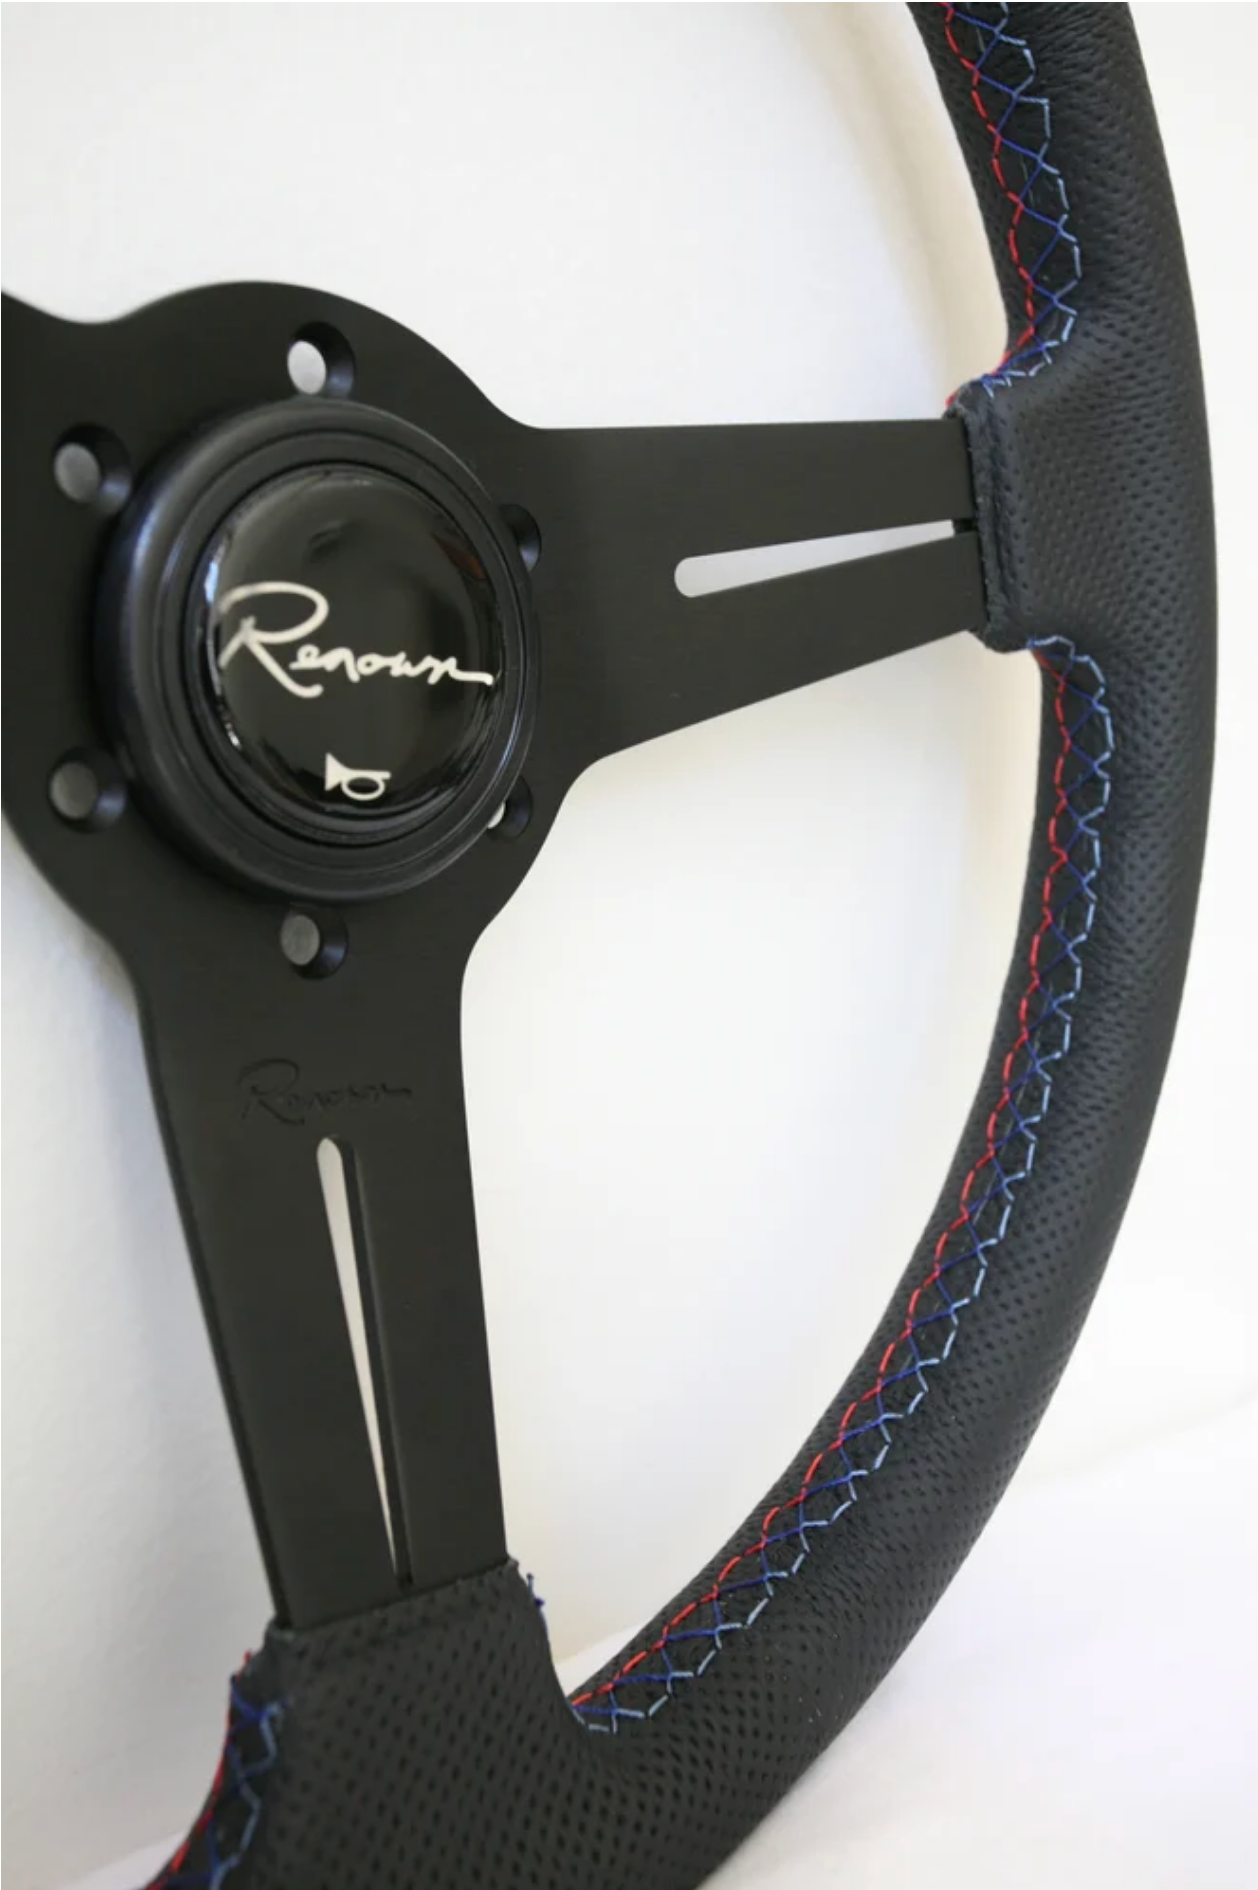 Renown Mille Motorsport Steering Wheel